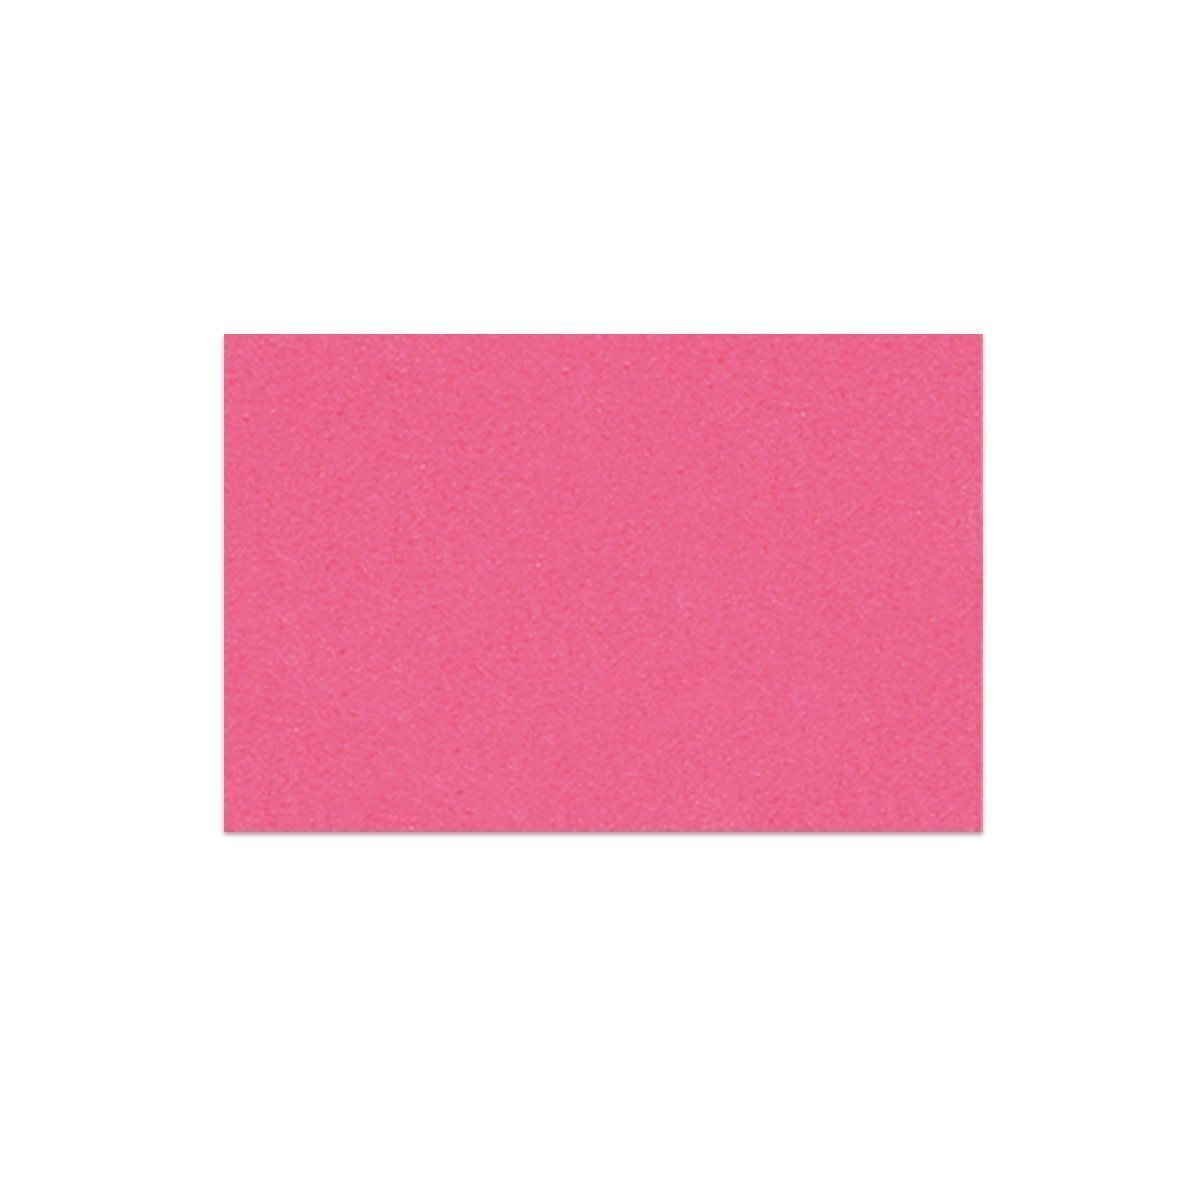 Mossgummi 2mm, 30 x 40 cm, 5 Bögen, pink